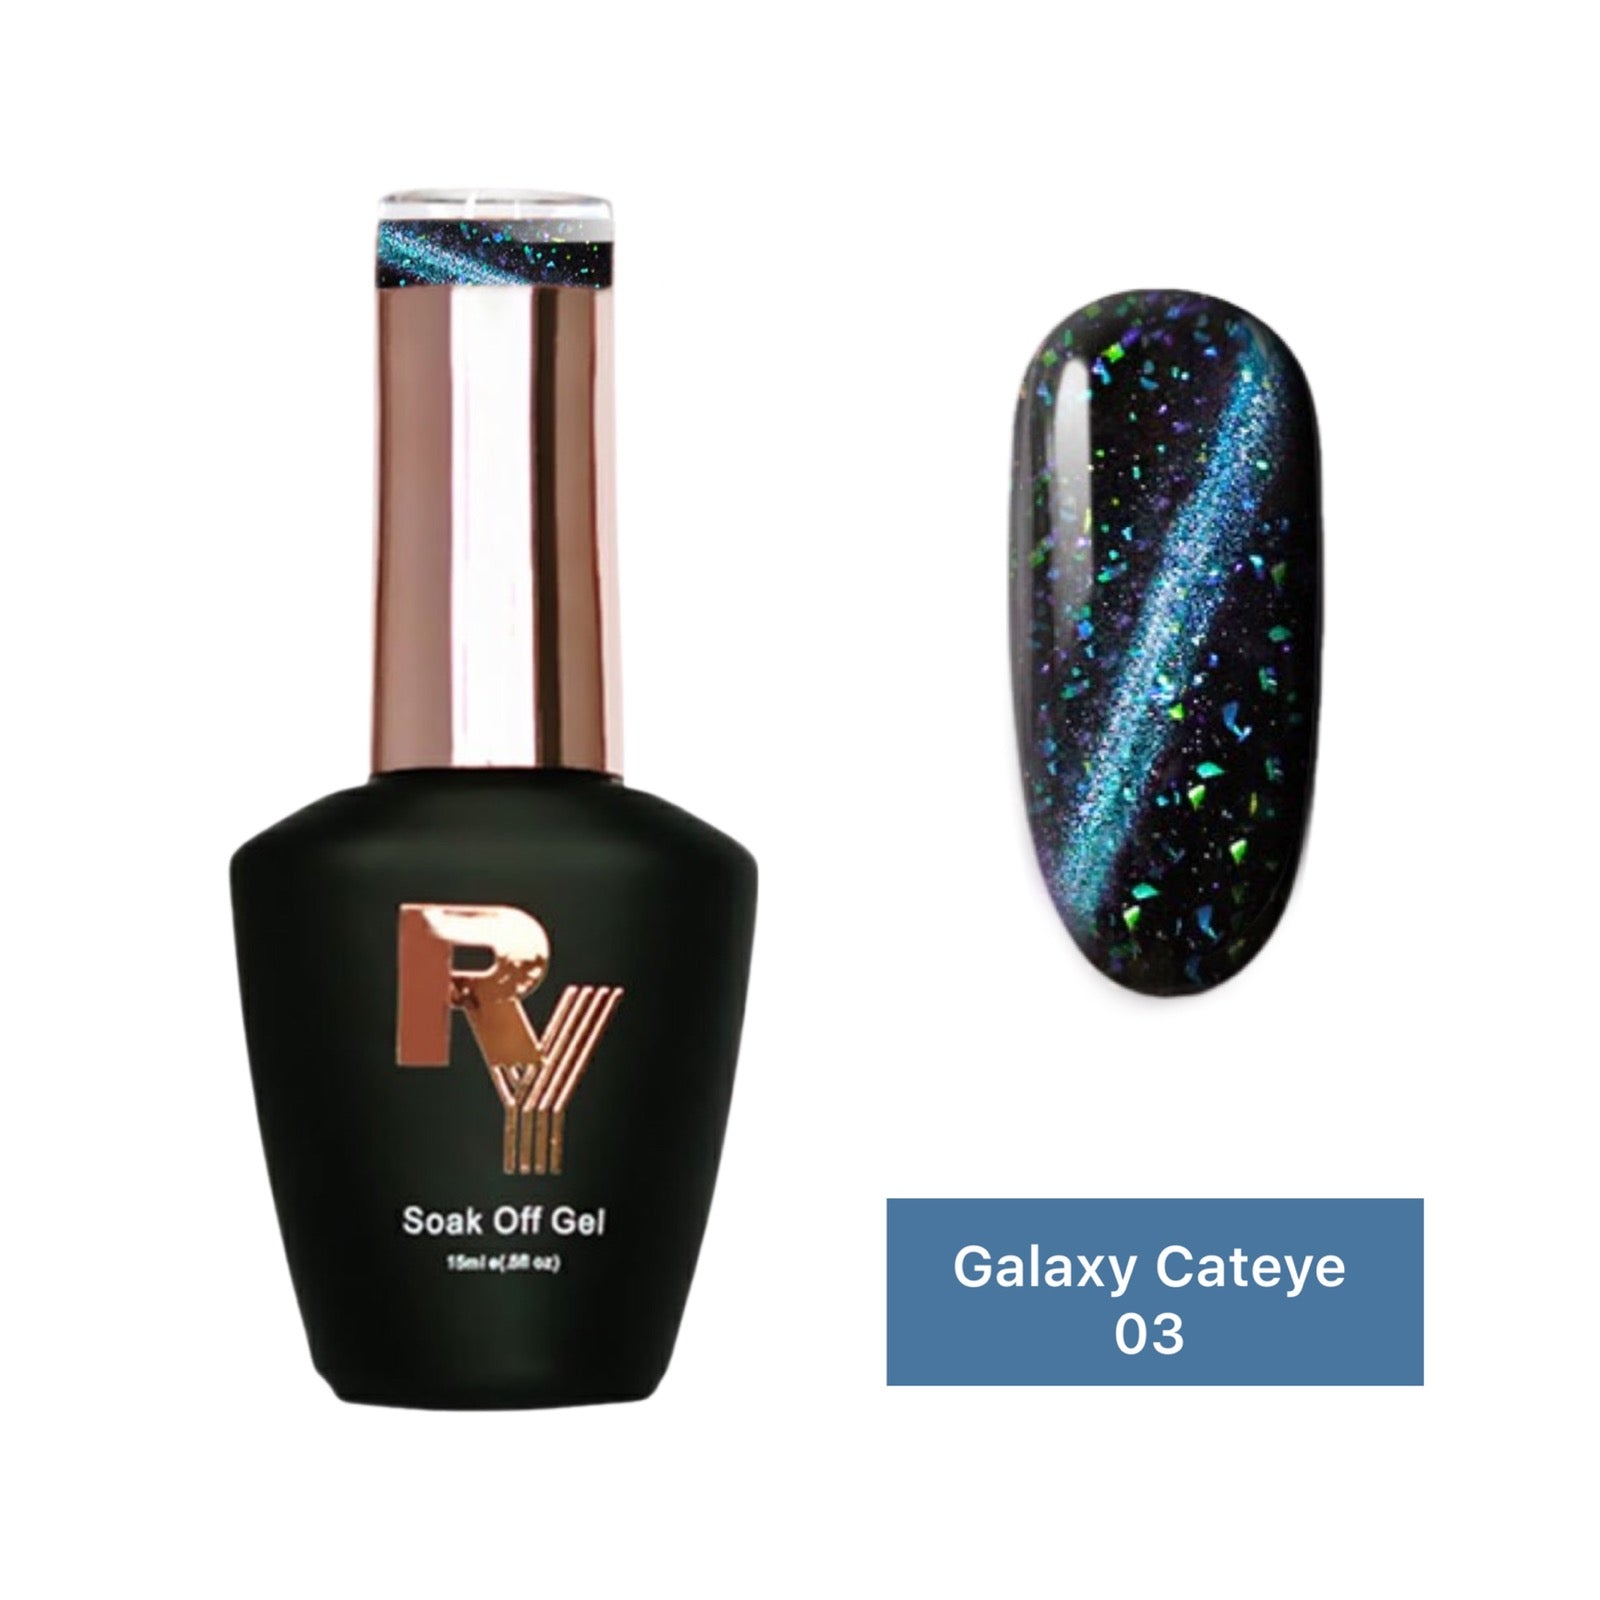 Riya's Galaxy Cateye 3